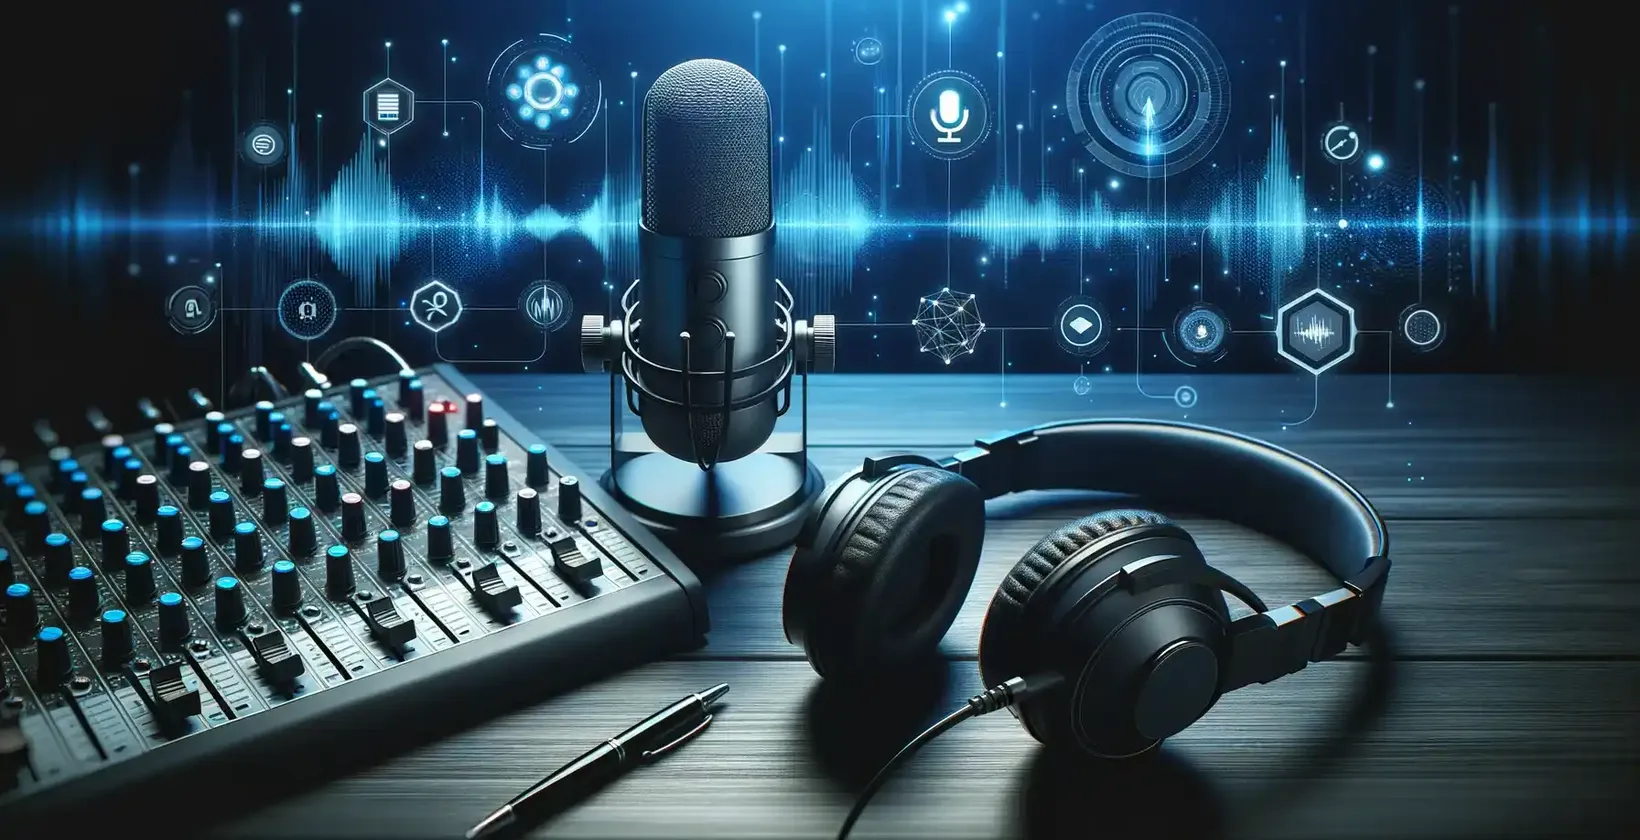 播客的可访问性是通过录音室设备实现的，包括麦克风、耳机和显示音频波形的屏幕。